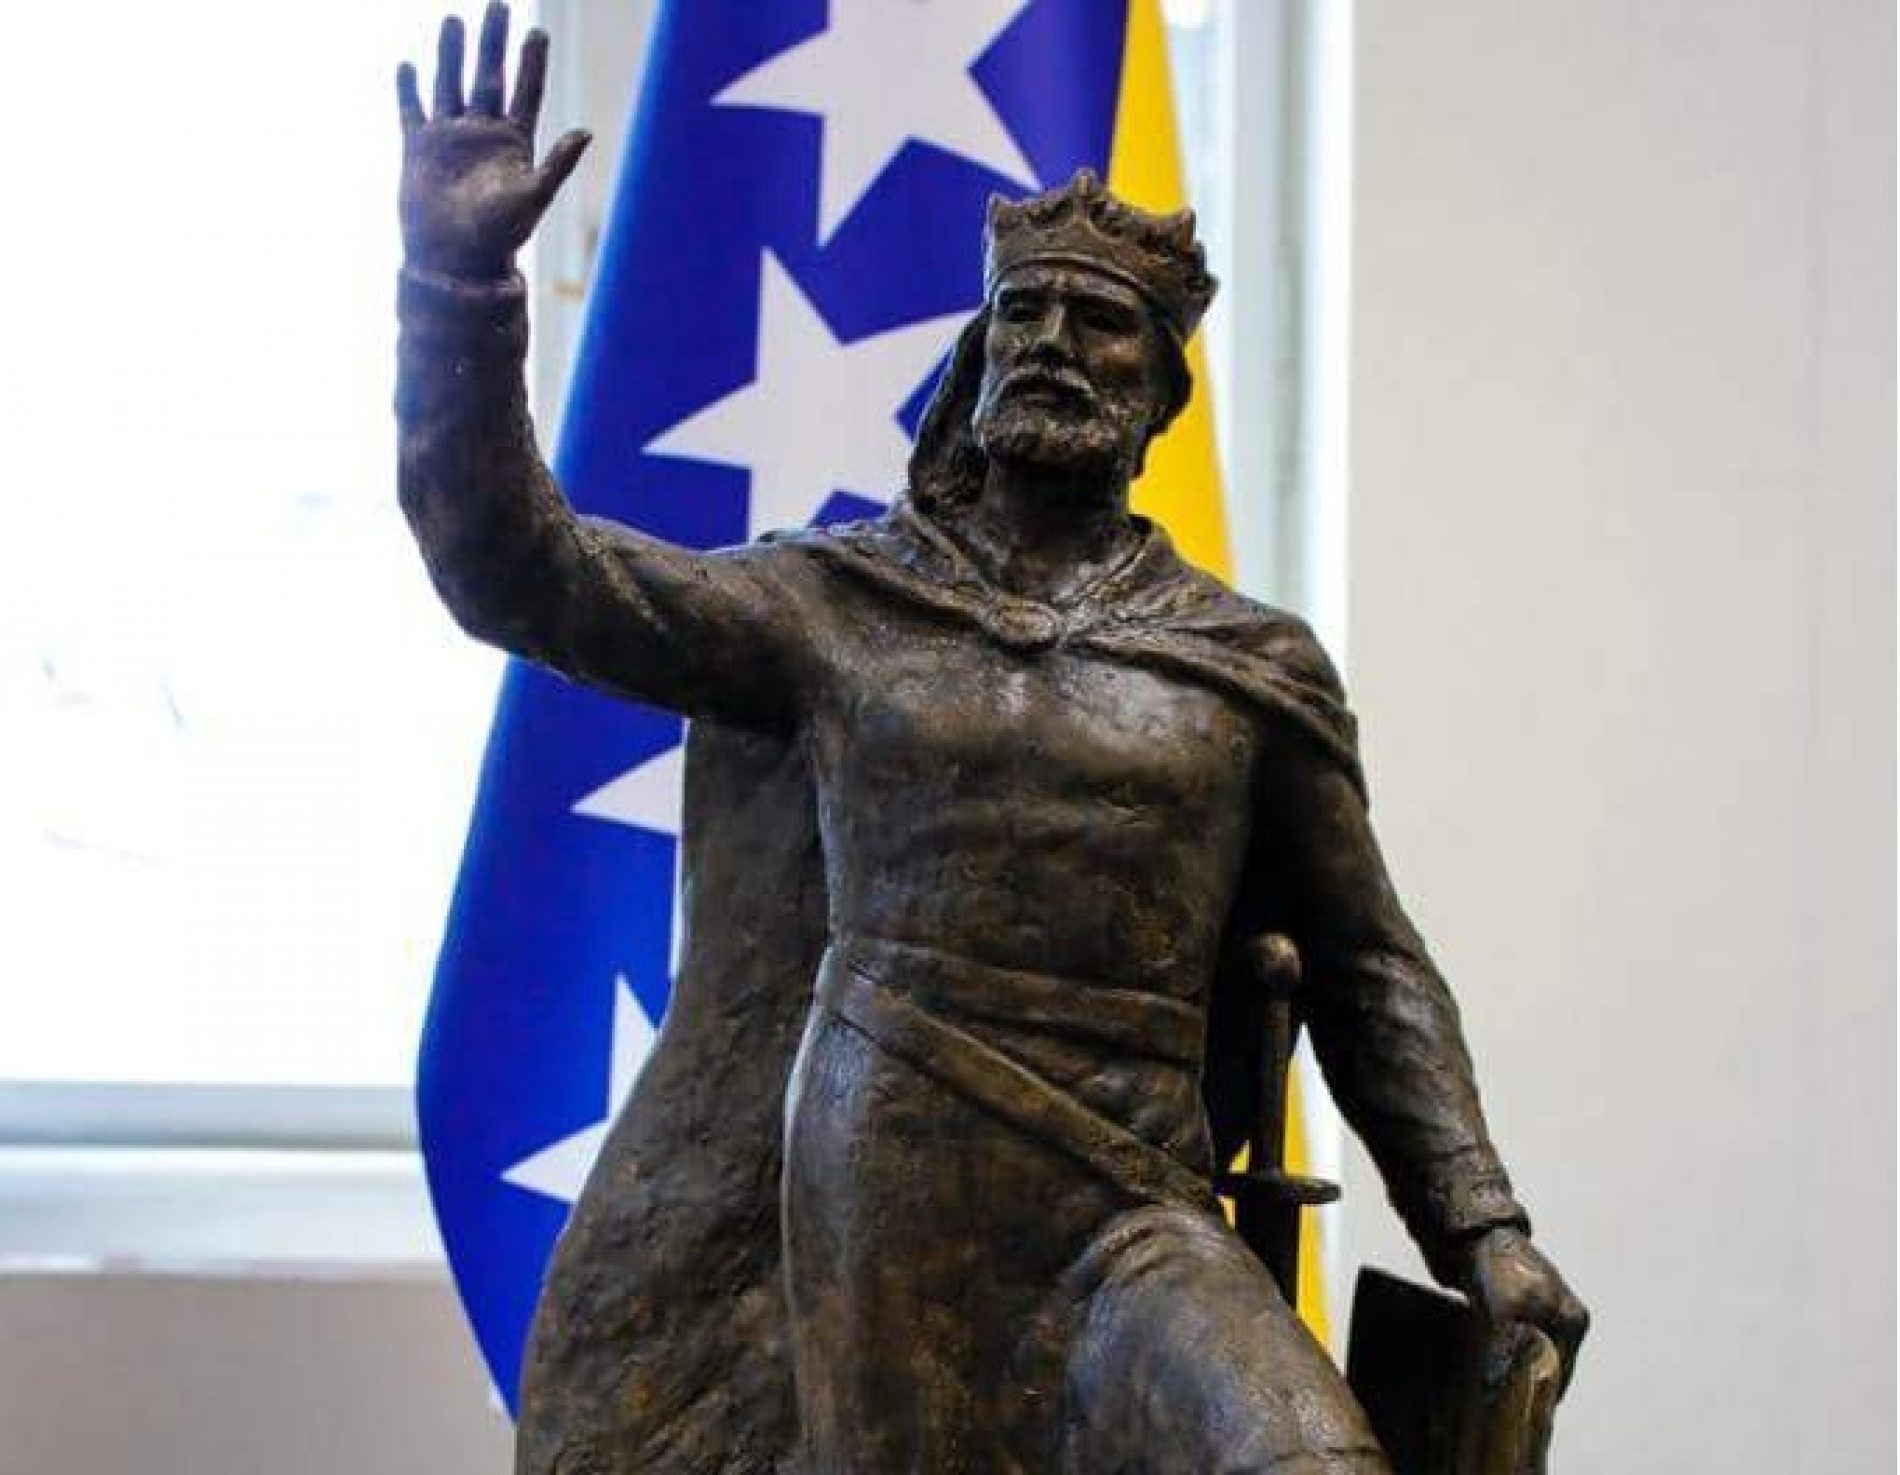 Predstavljen izgled spomenika bosanskom kralju Tvrtku I Kotromaniću u Sarajevu